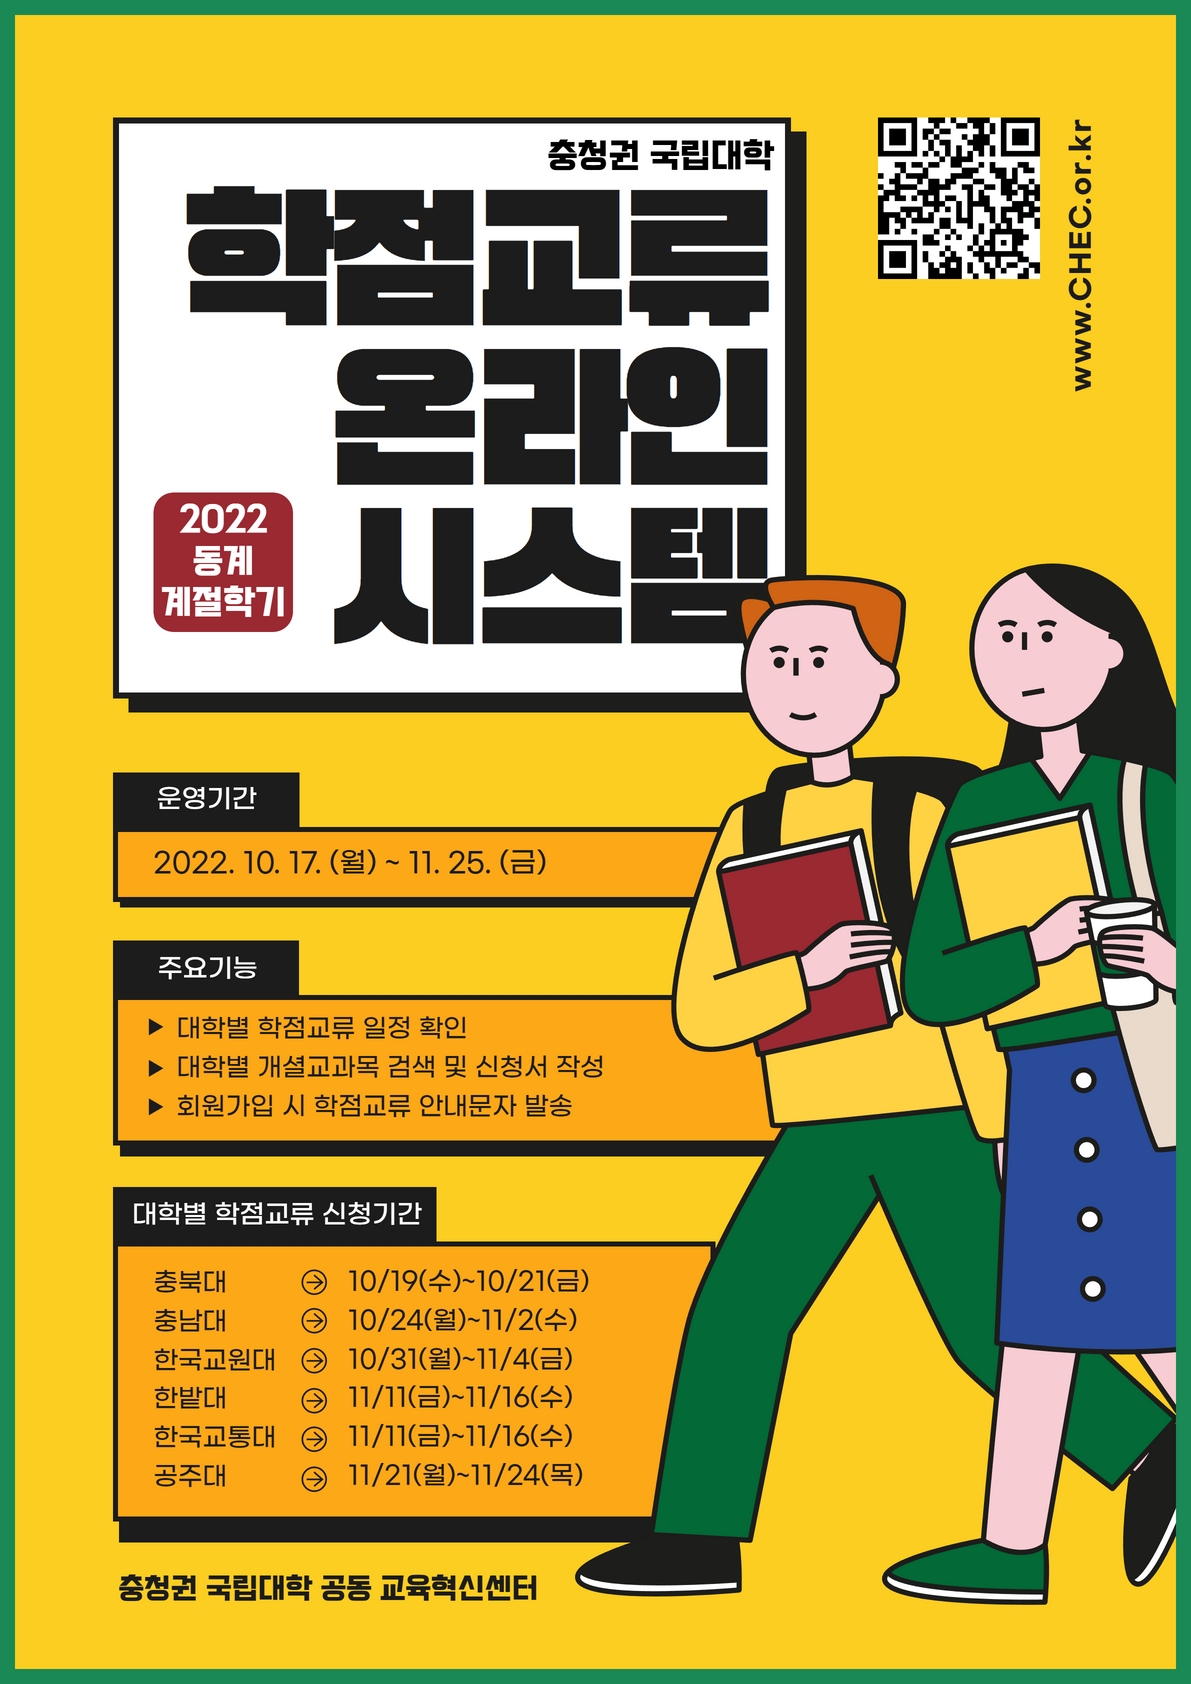 [붙임1] 2022-동계 학점교류 온라인시스템 홍보 포스터.jpg